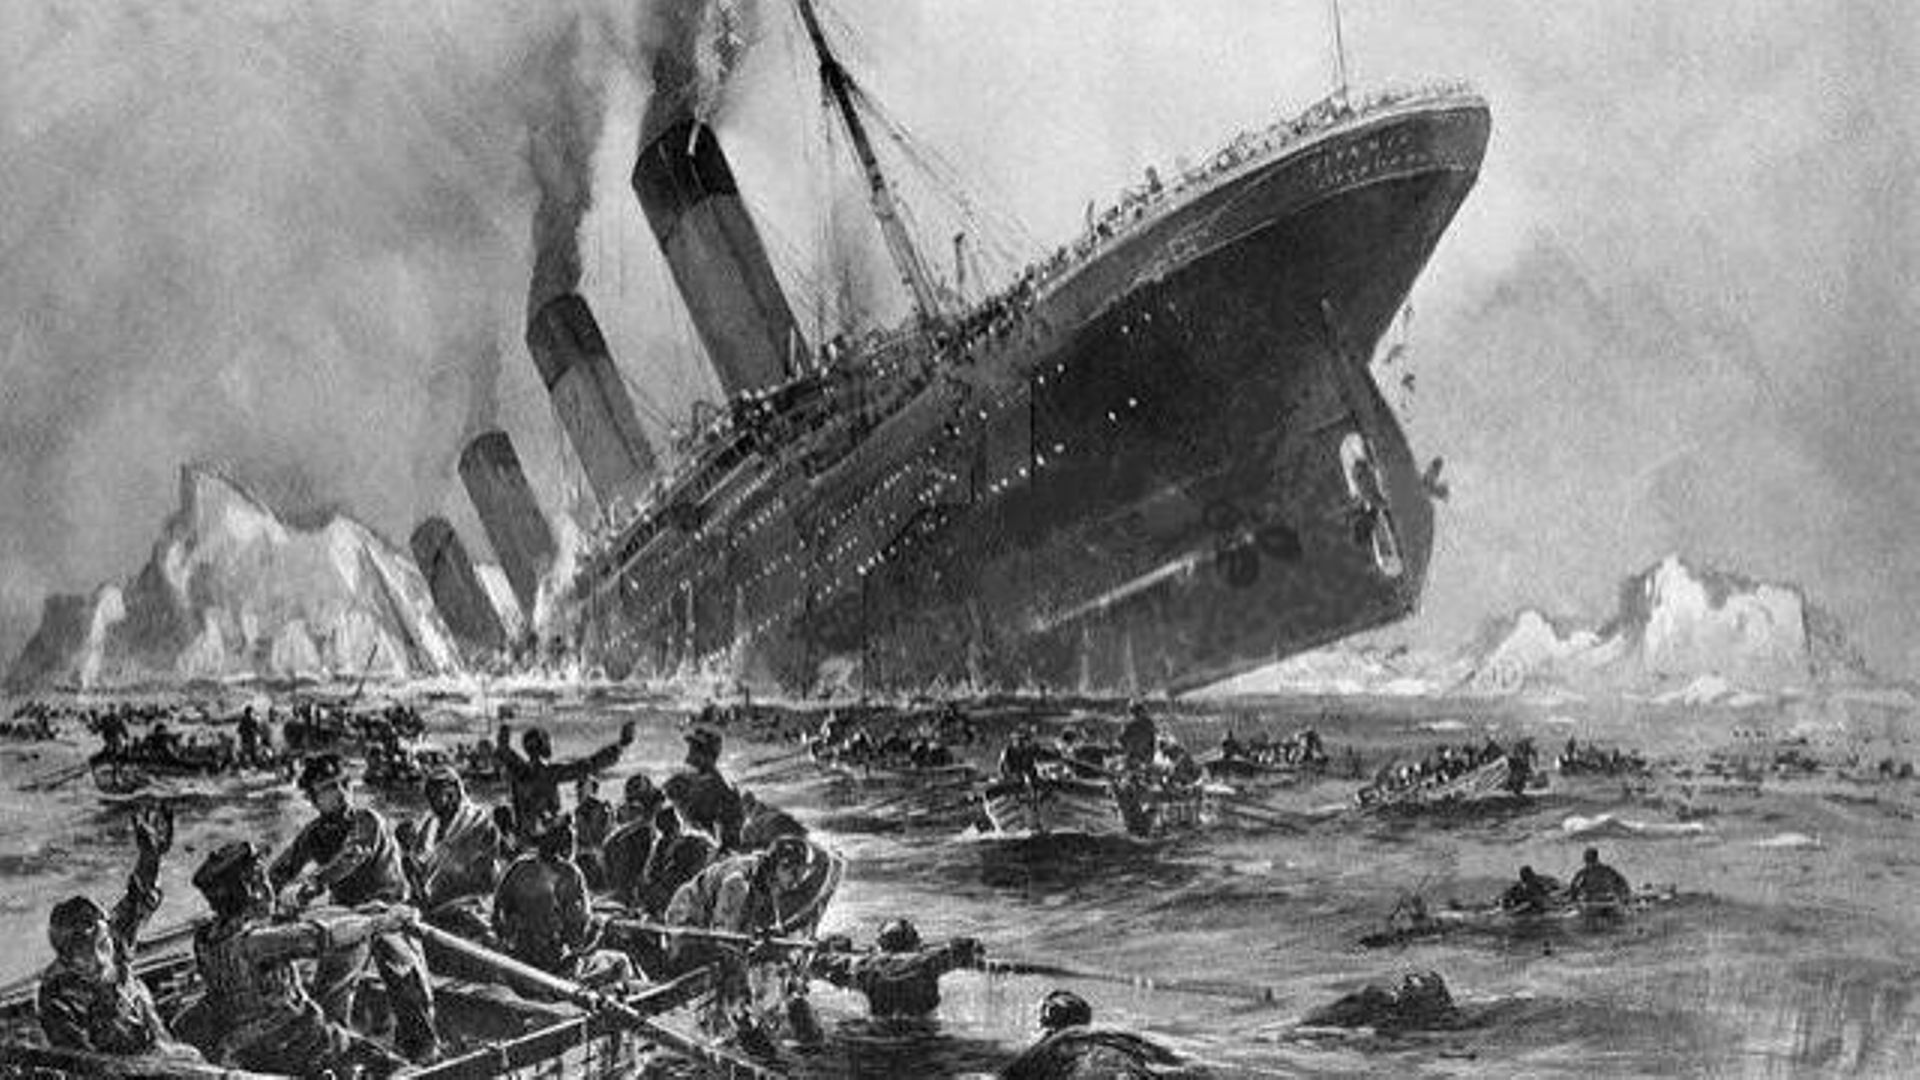 premier et dernier voyage du titanic